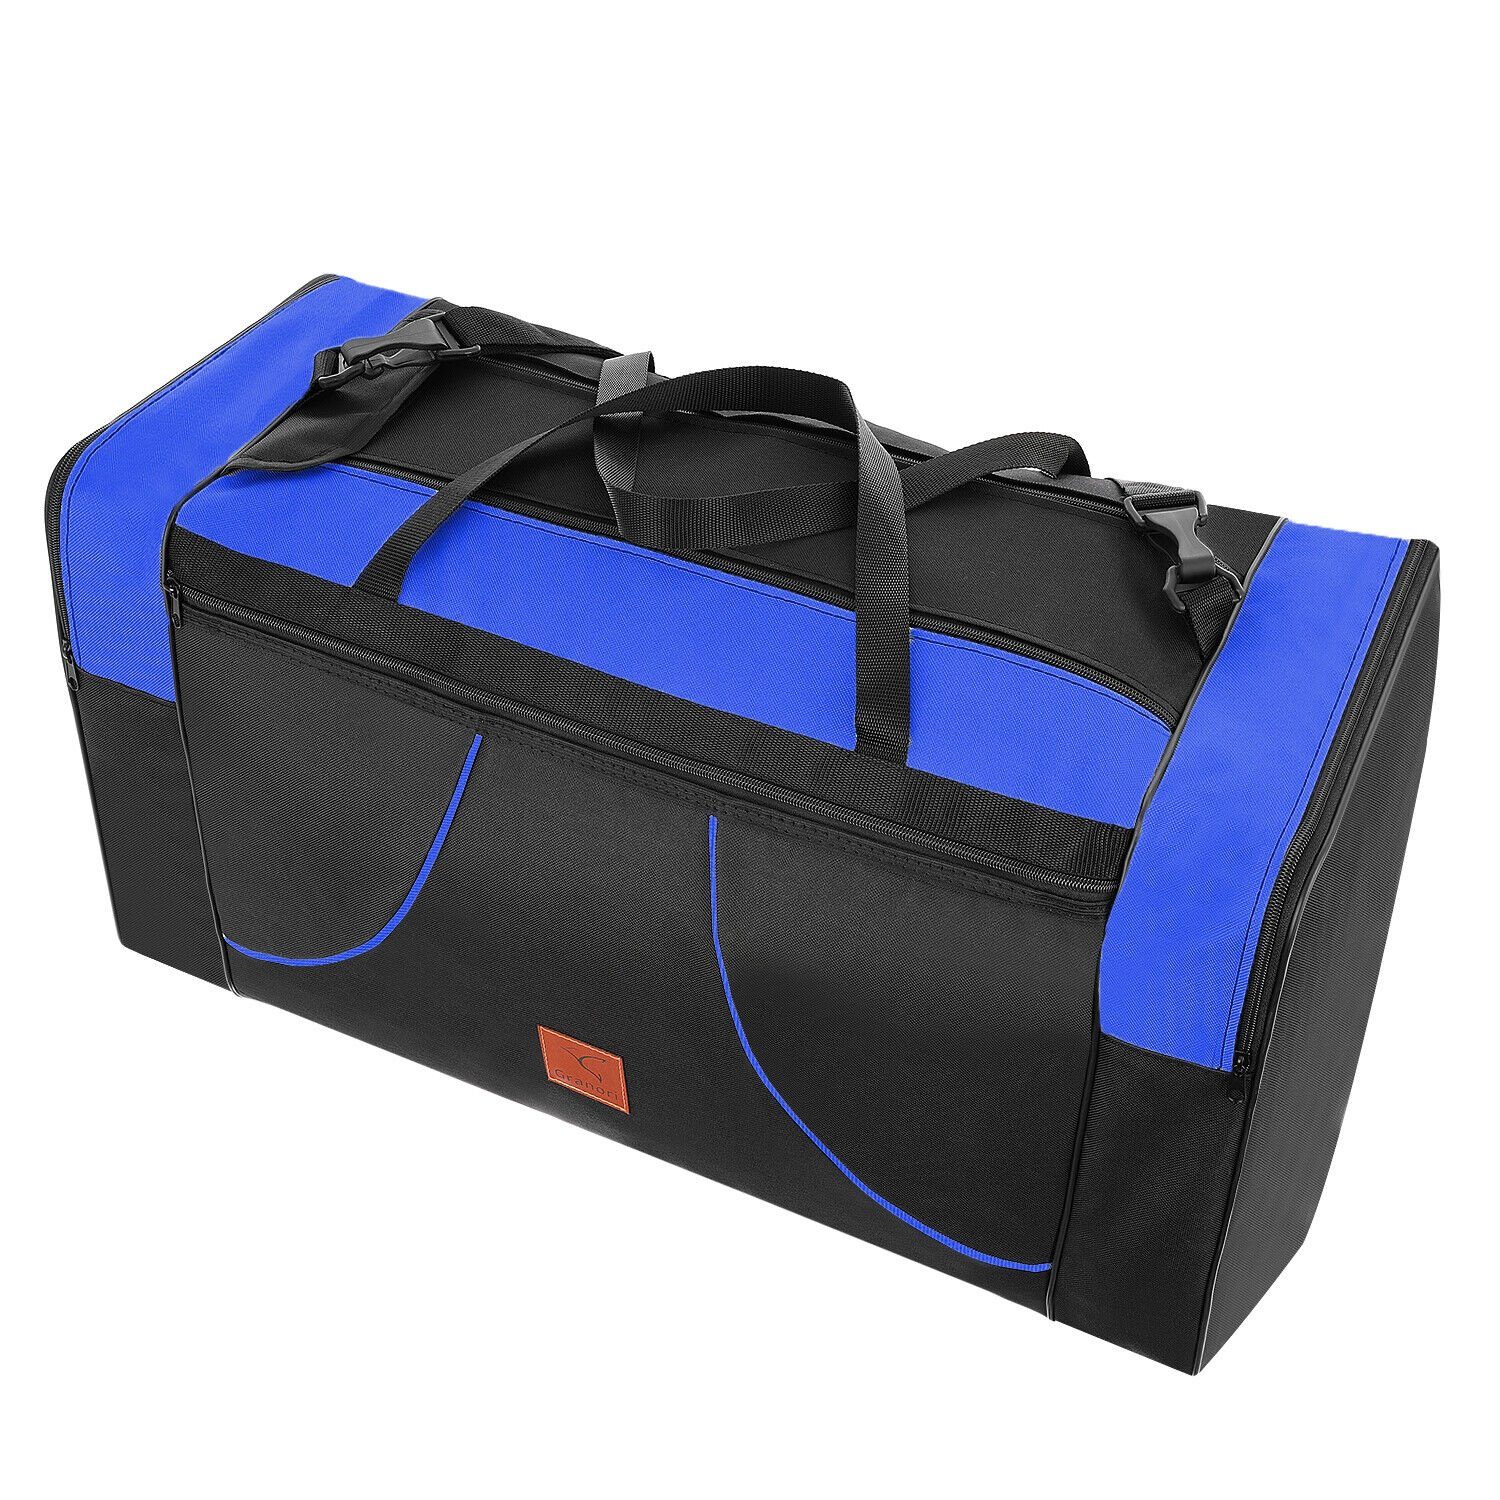 Granori Reisetasche XL für Flugzeug mit Schultergurt und mehreren Fächern – leicht & groß, faltbar und mit 80 l Fassungsvermögen, für Damen & Herren Blau-Schwarz